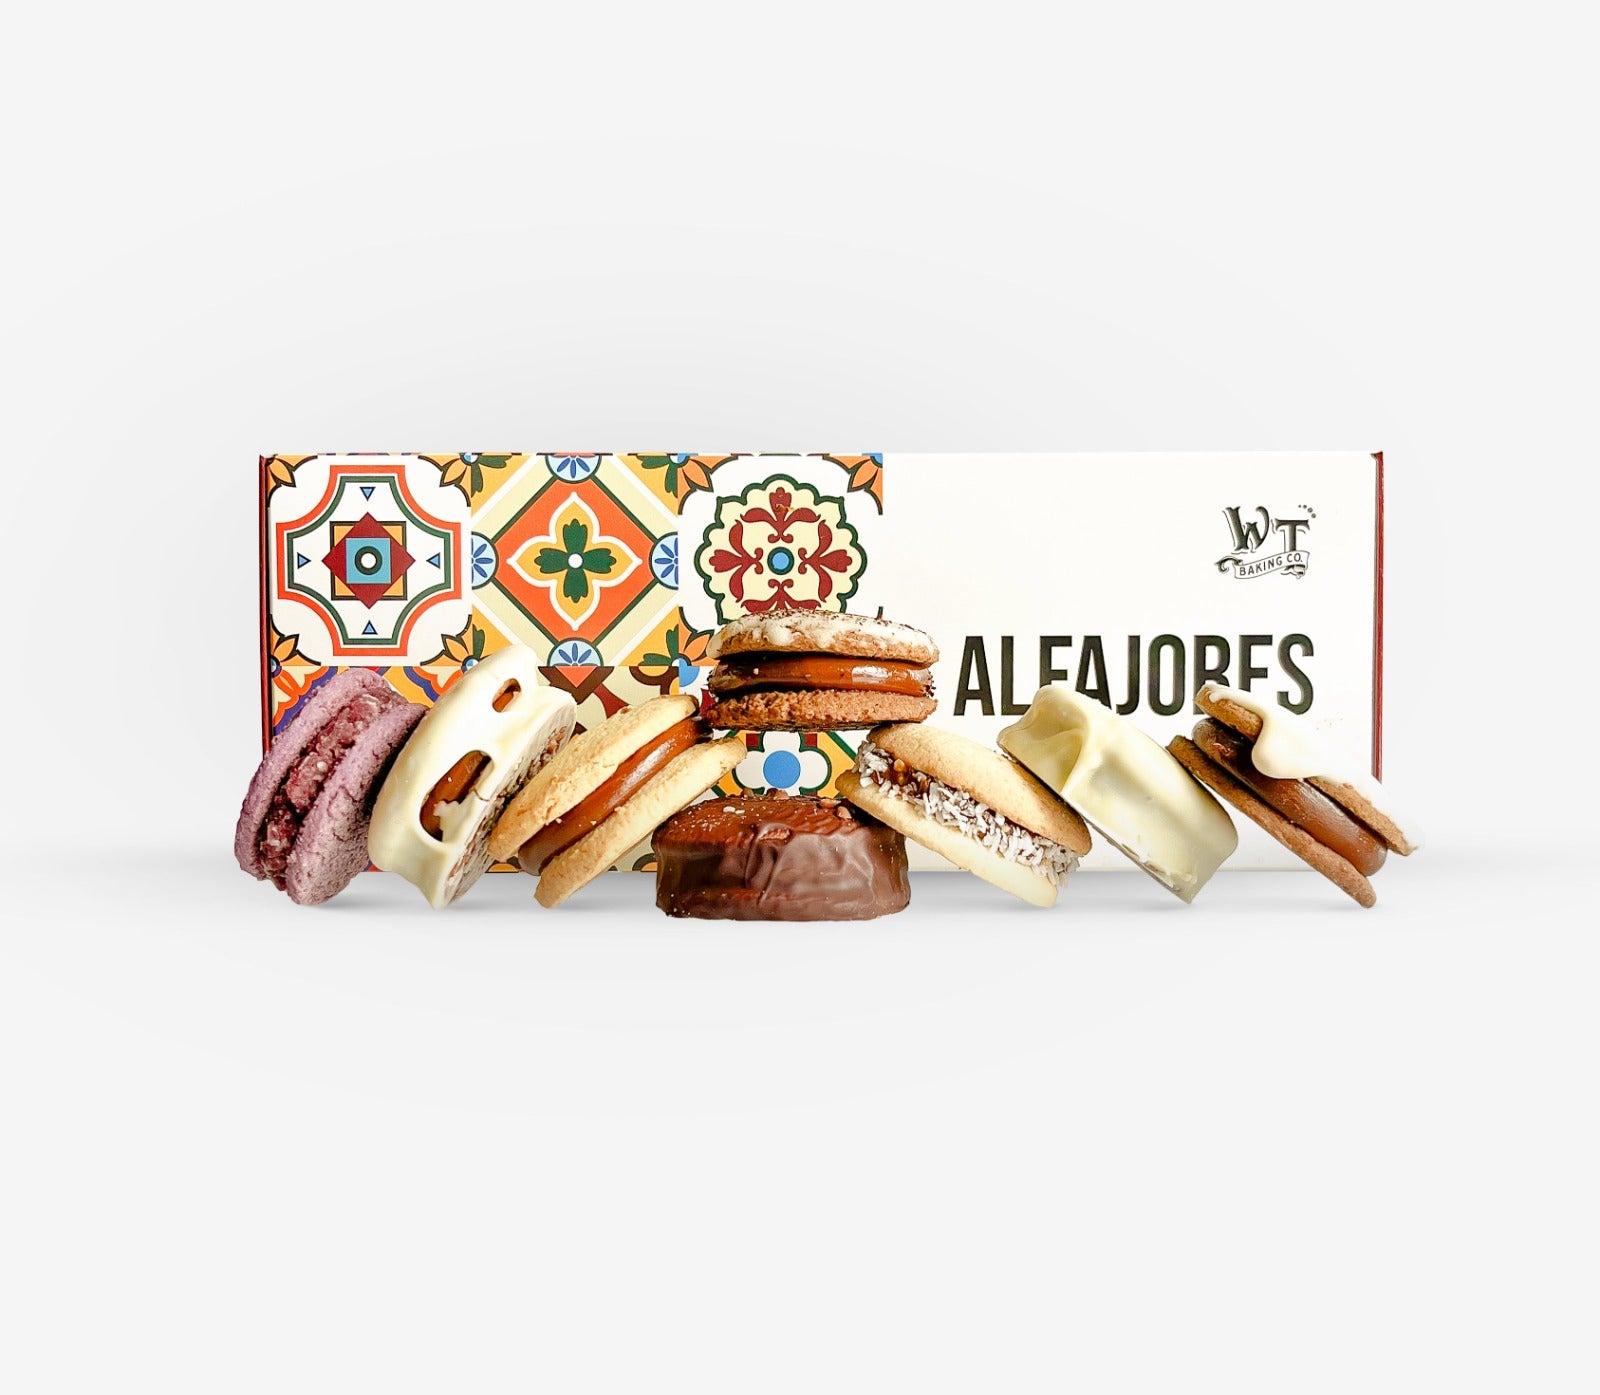 Baker's Best: Alfajores & Cookies Sampler Wooden Table Baking Co.